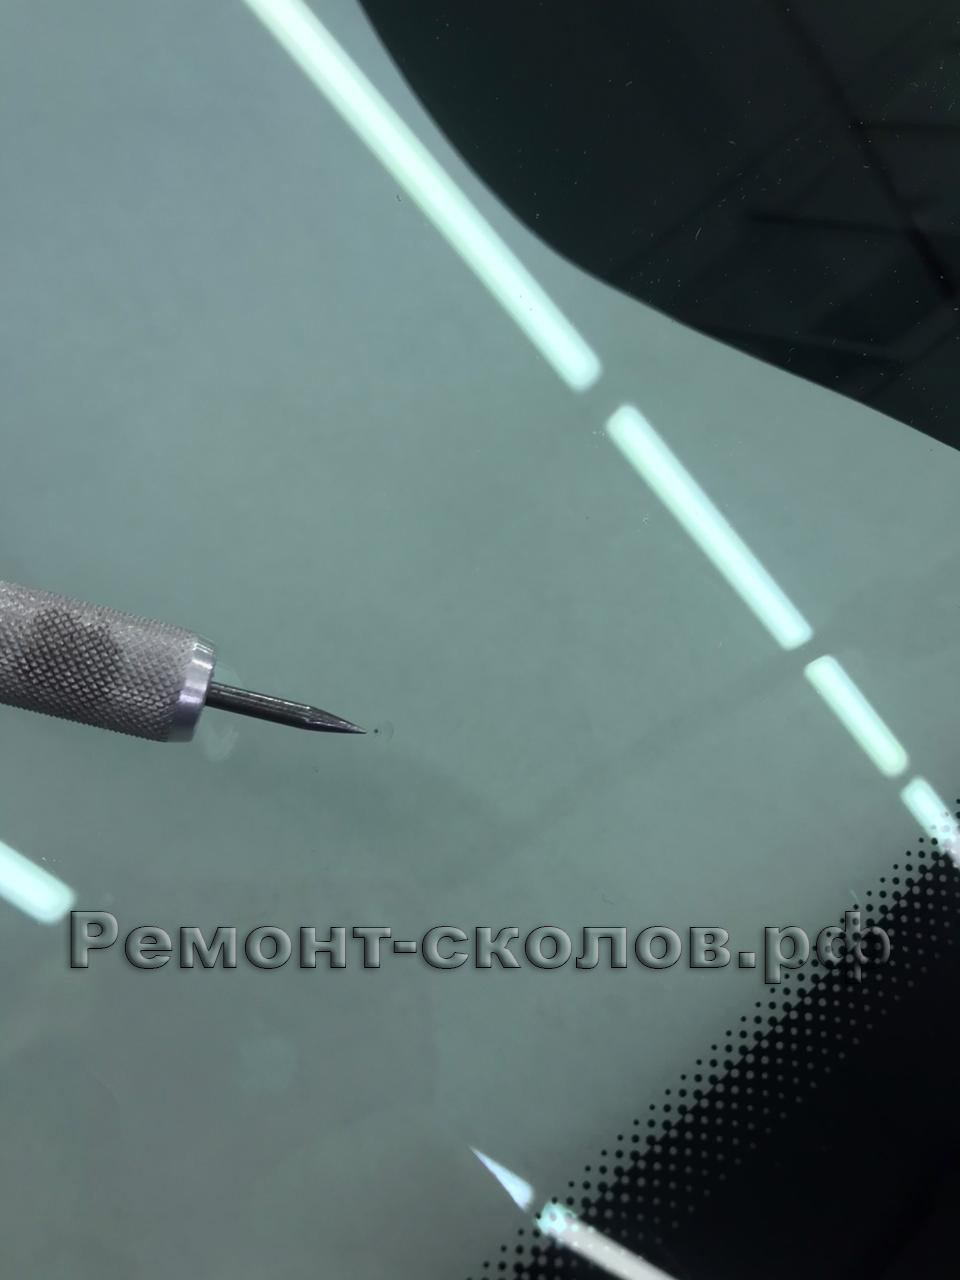 Финальные штрихи ремонта скола на лобовом стекле Porsche в ЮЗАО